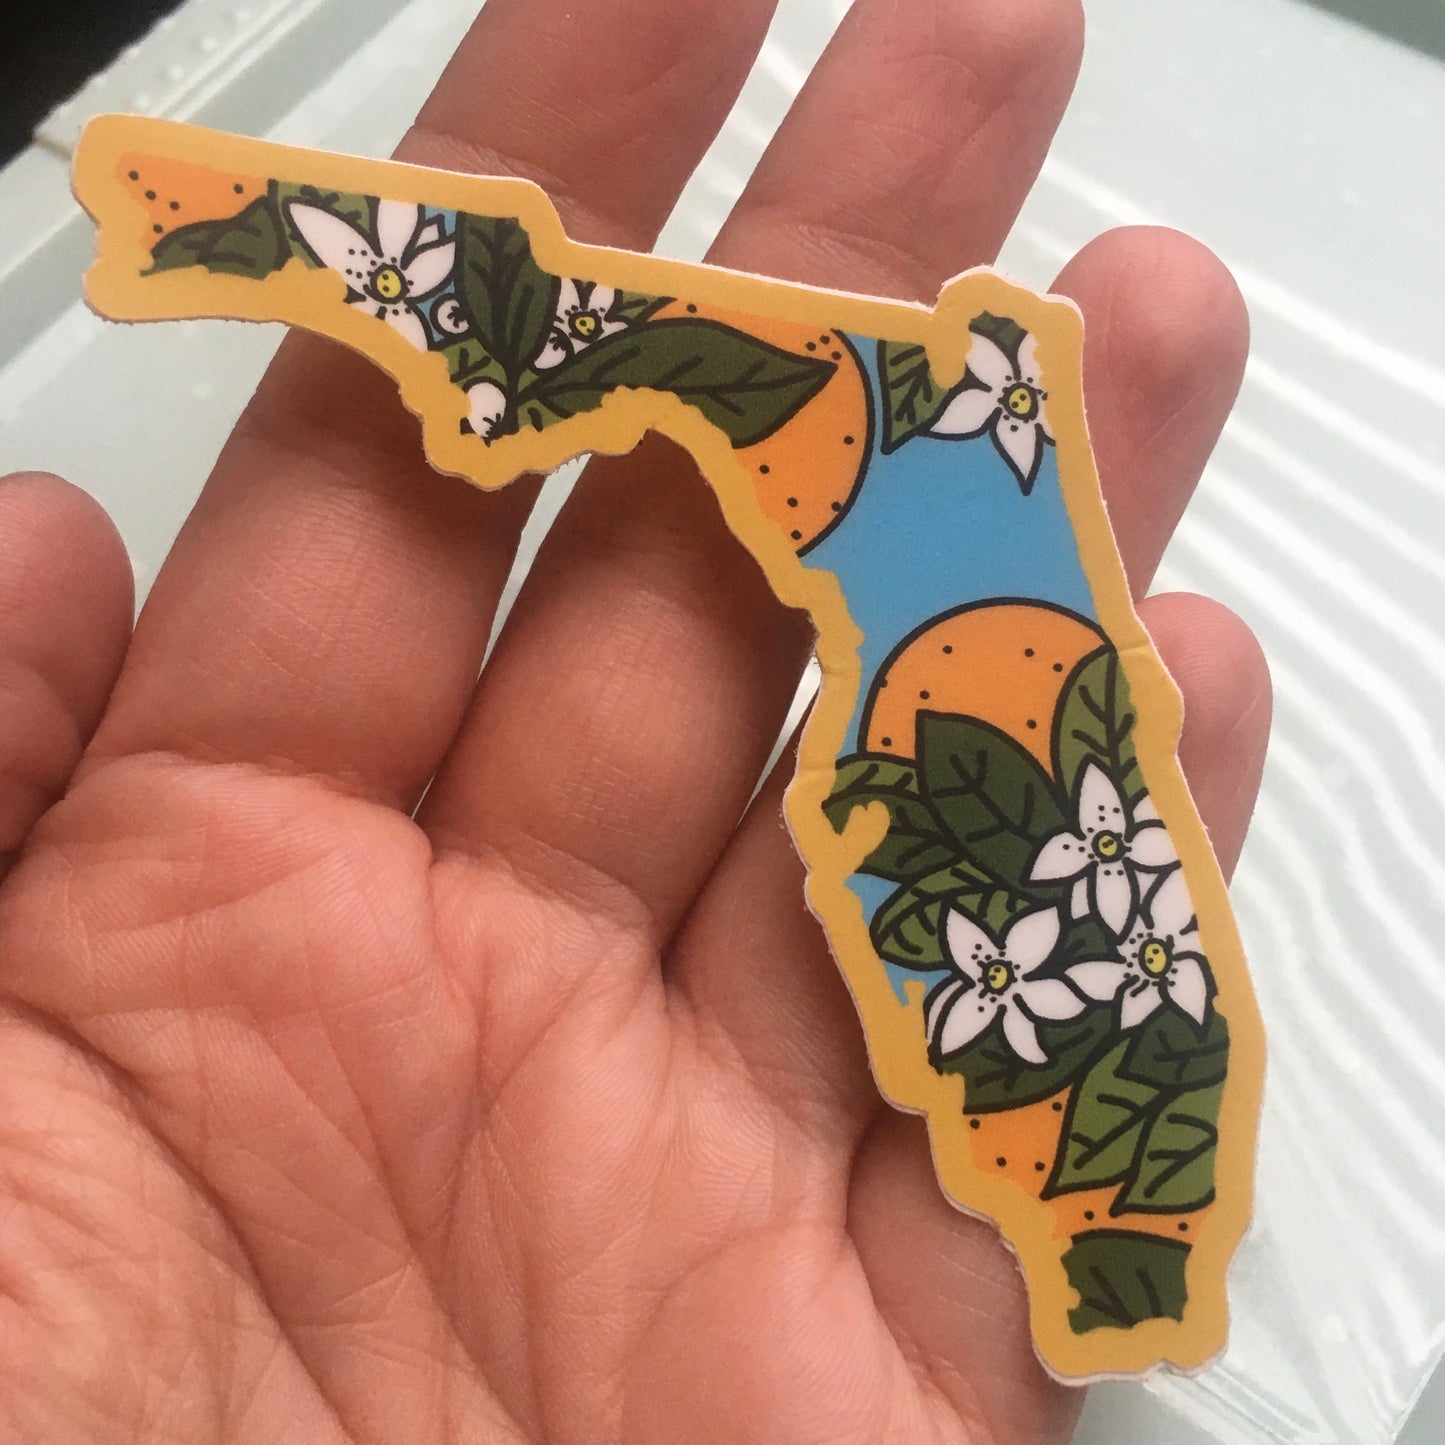 Florida Orange Blossom - Vinyl Sticker - State Flower Series